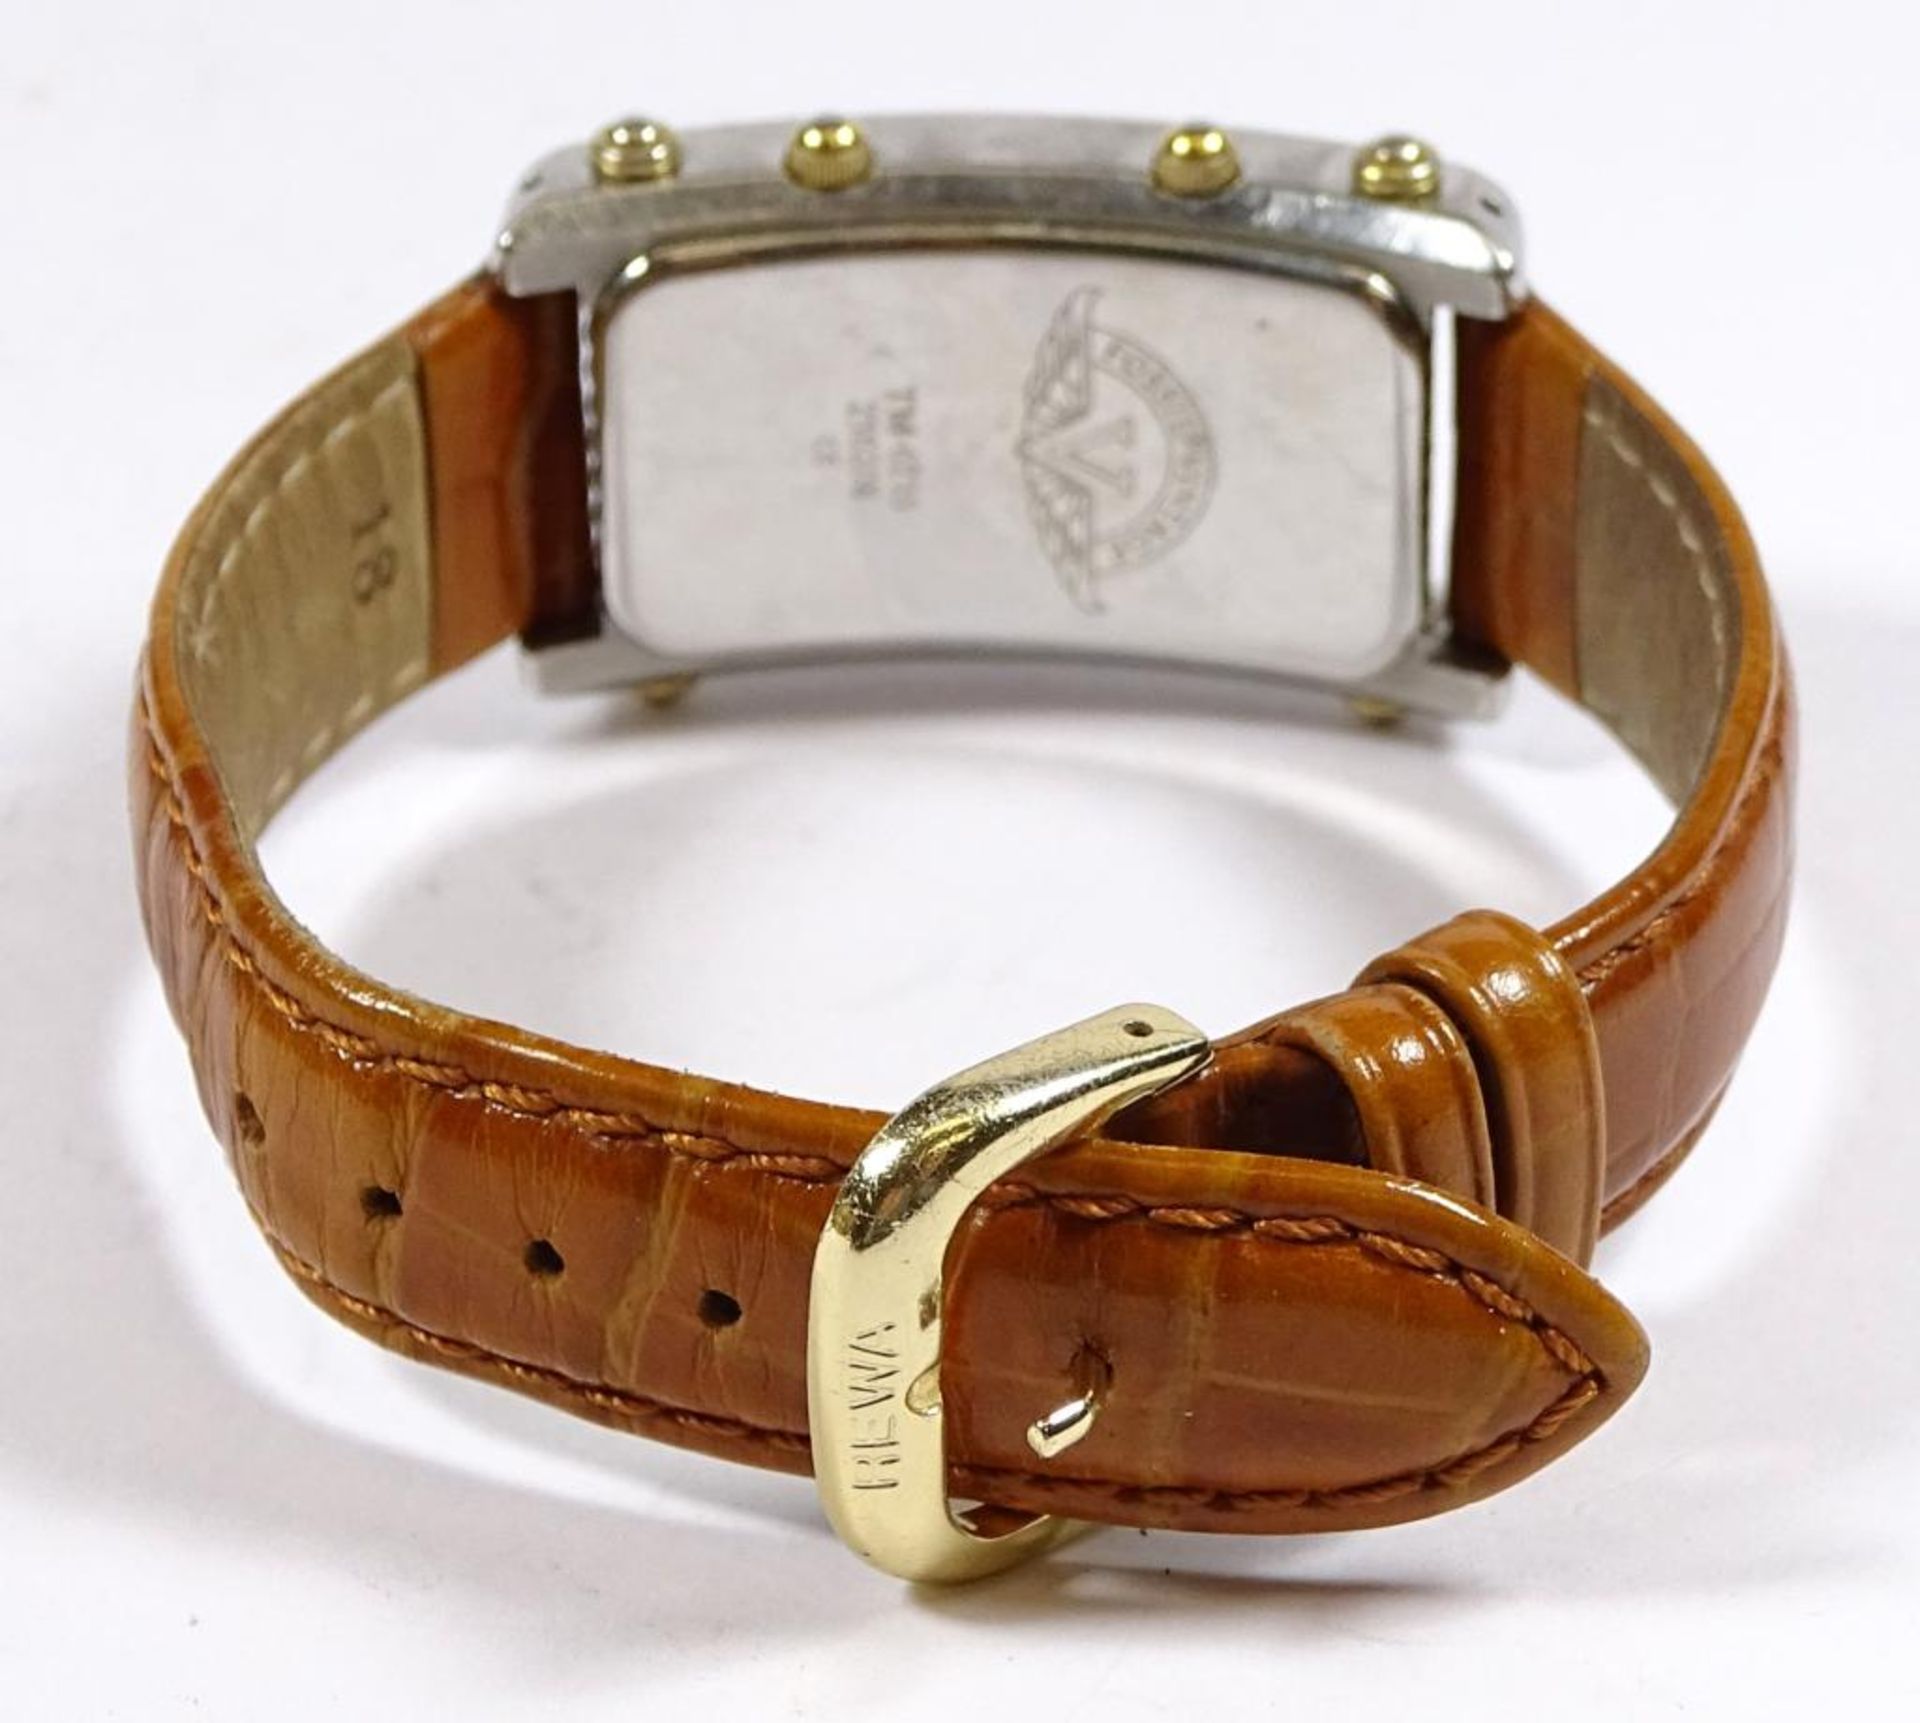 Armbanduhr "Fossil",Quartz,Funktion nicht geprüft,Tragespure - Bild 4 aus 5